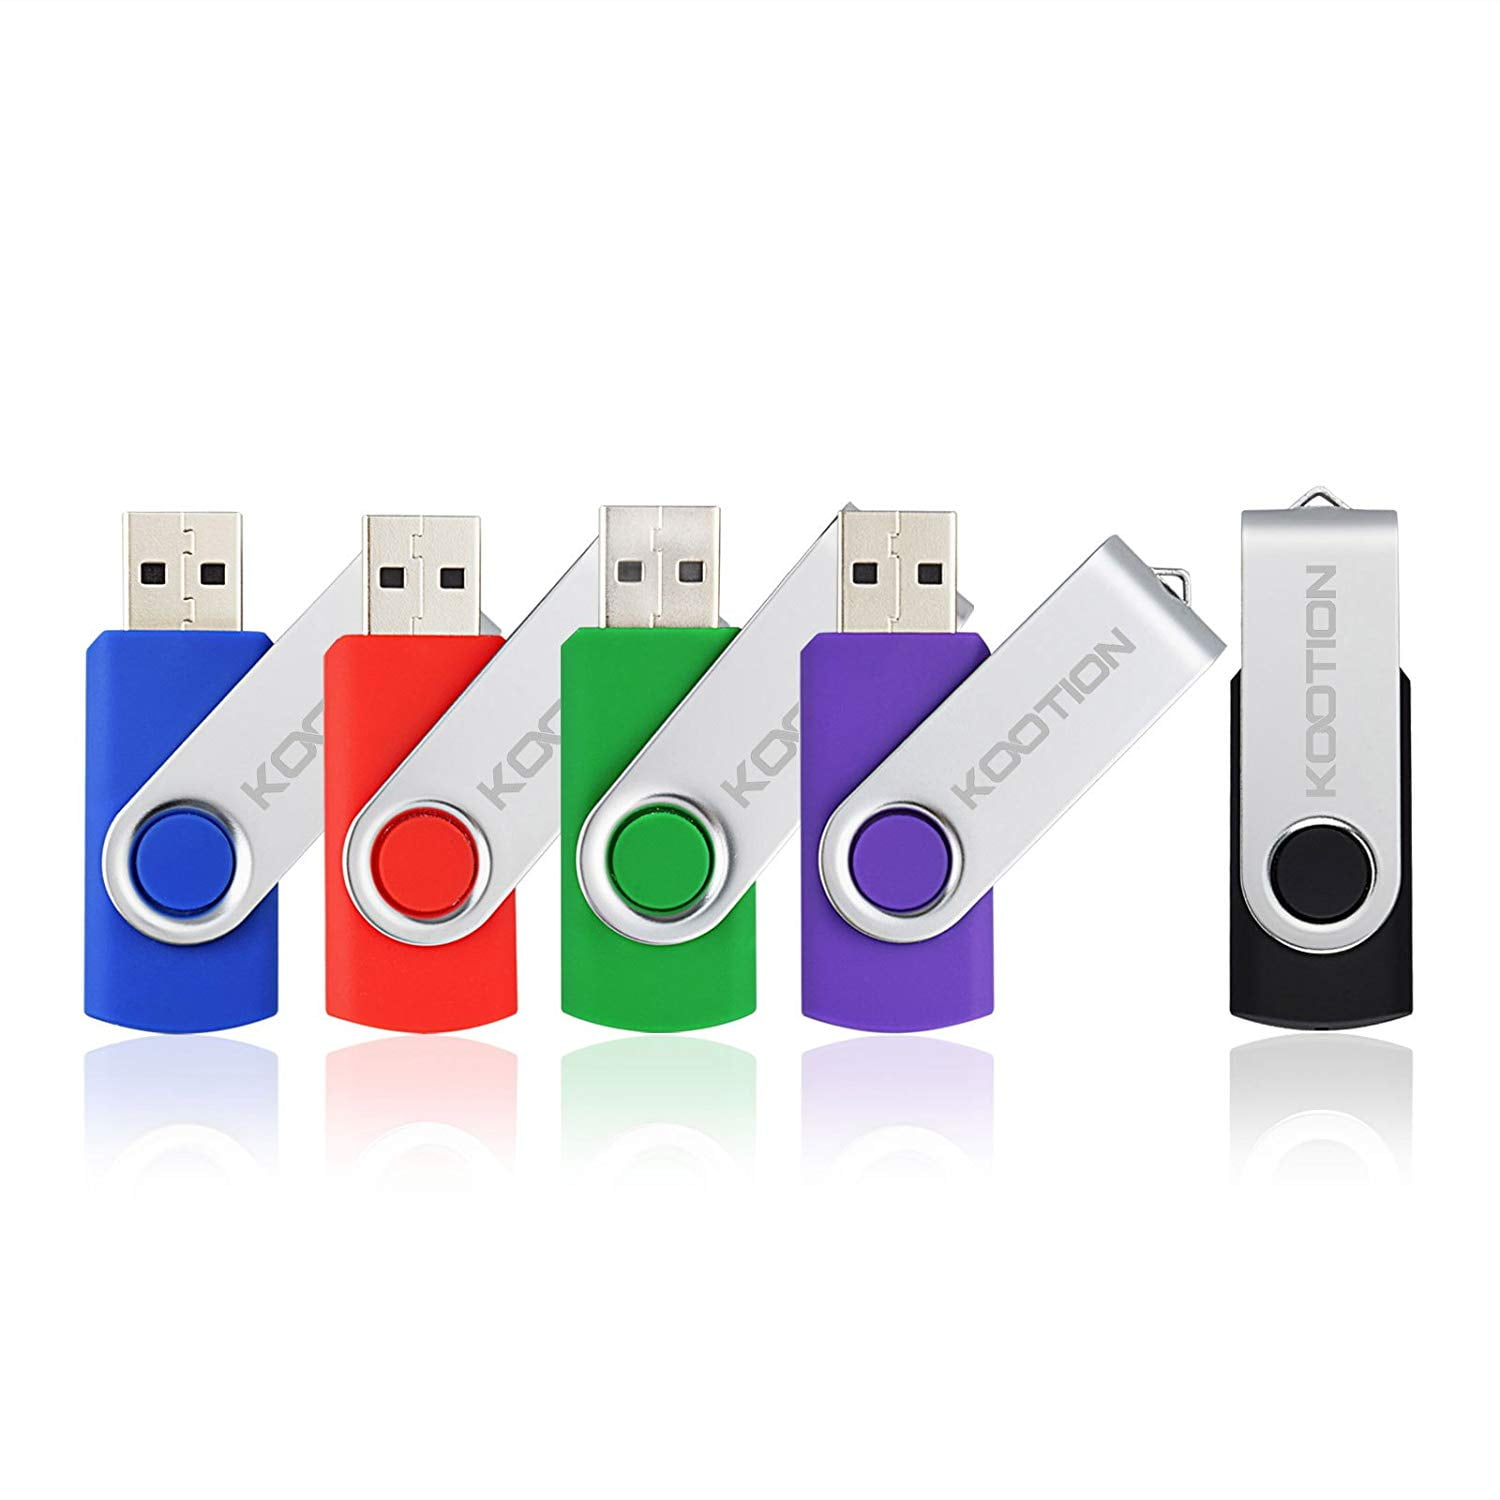 10 Pack 1GB-16GB USB Flash Drives Memory Sticks 5 Colors USB 2.0 Enough Storage 